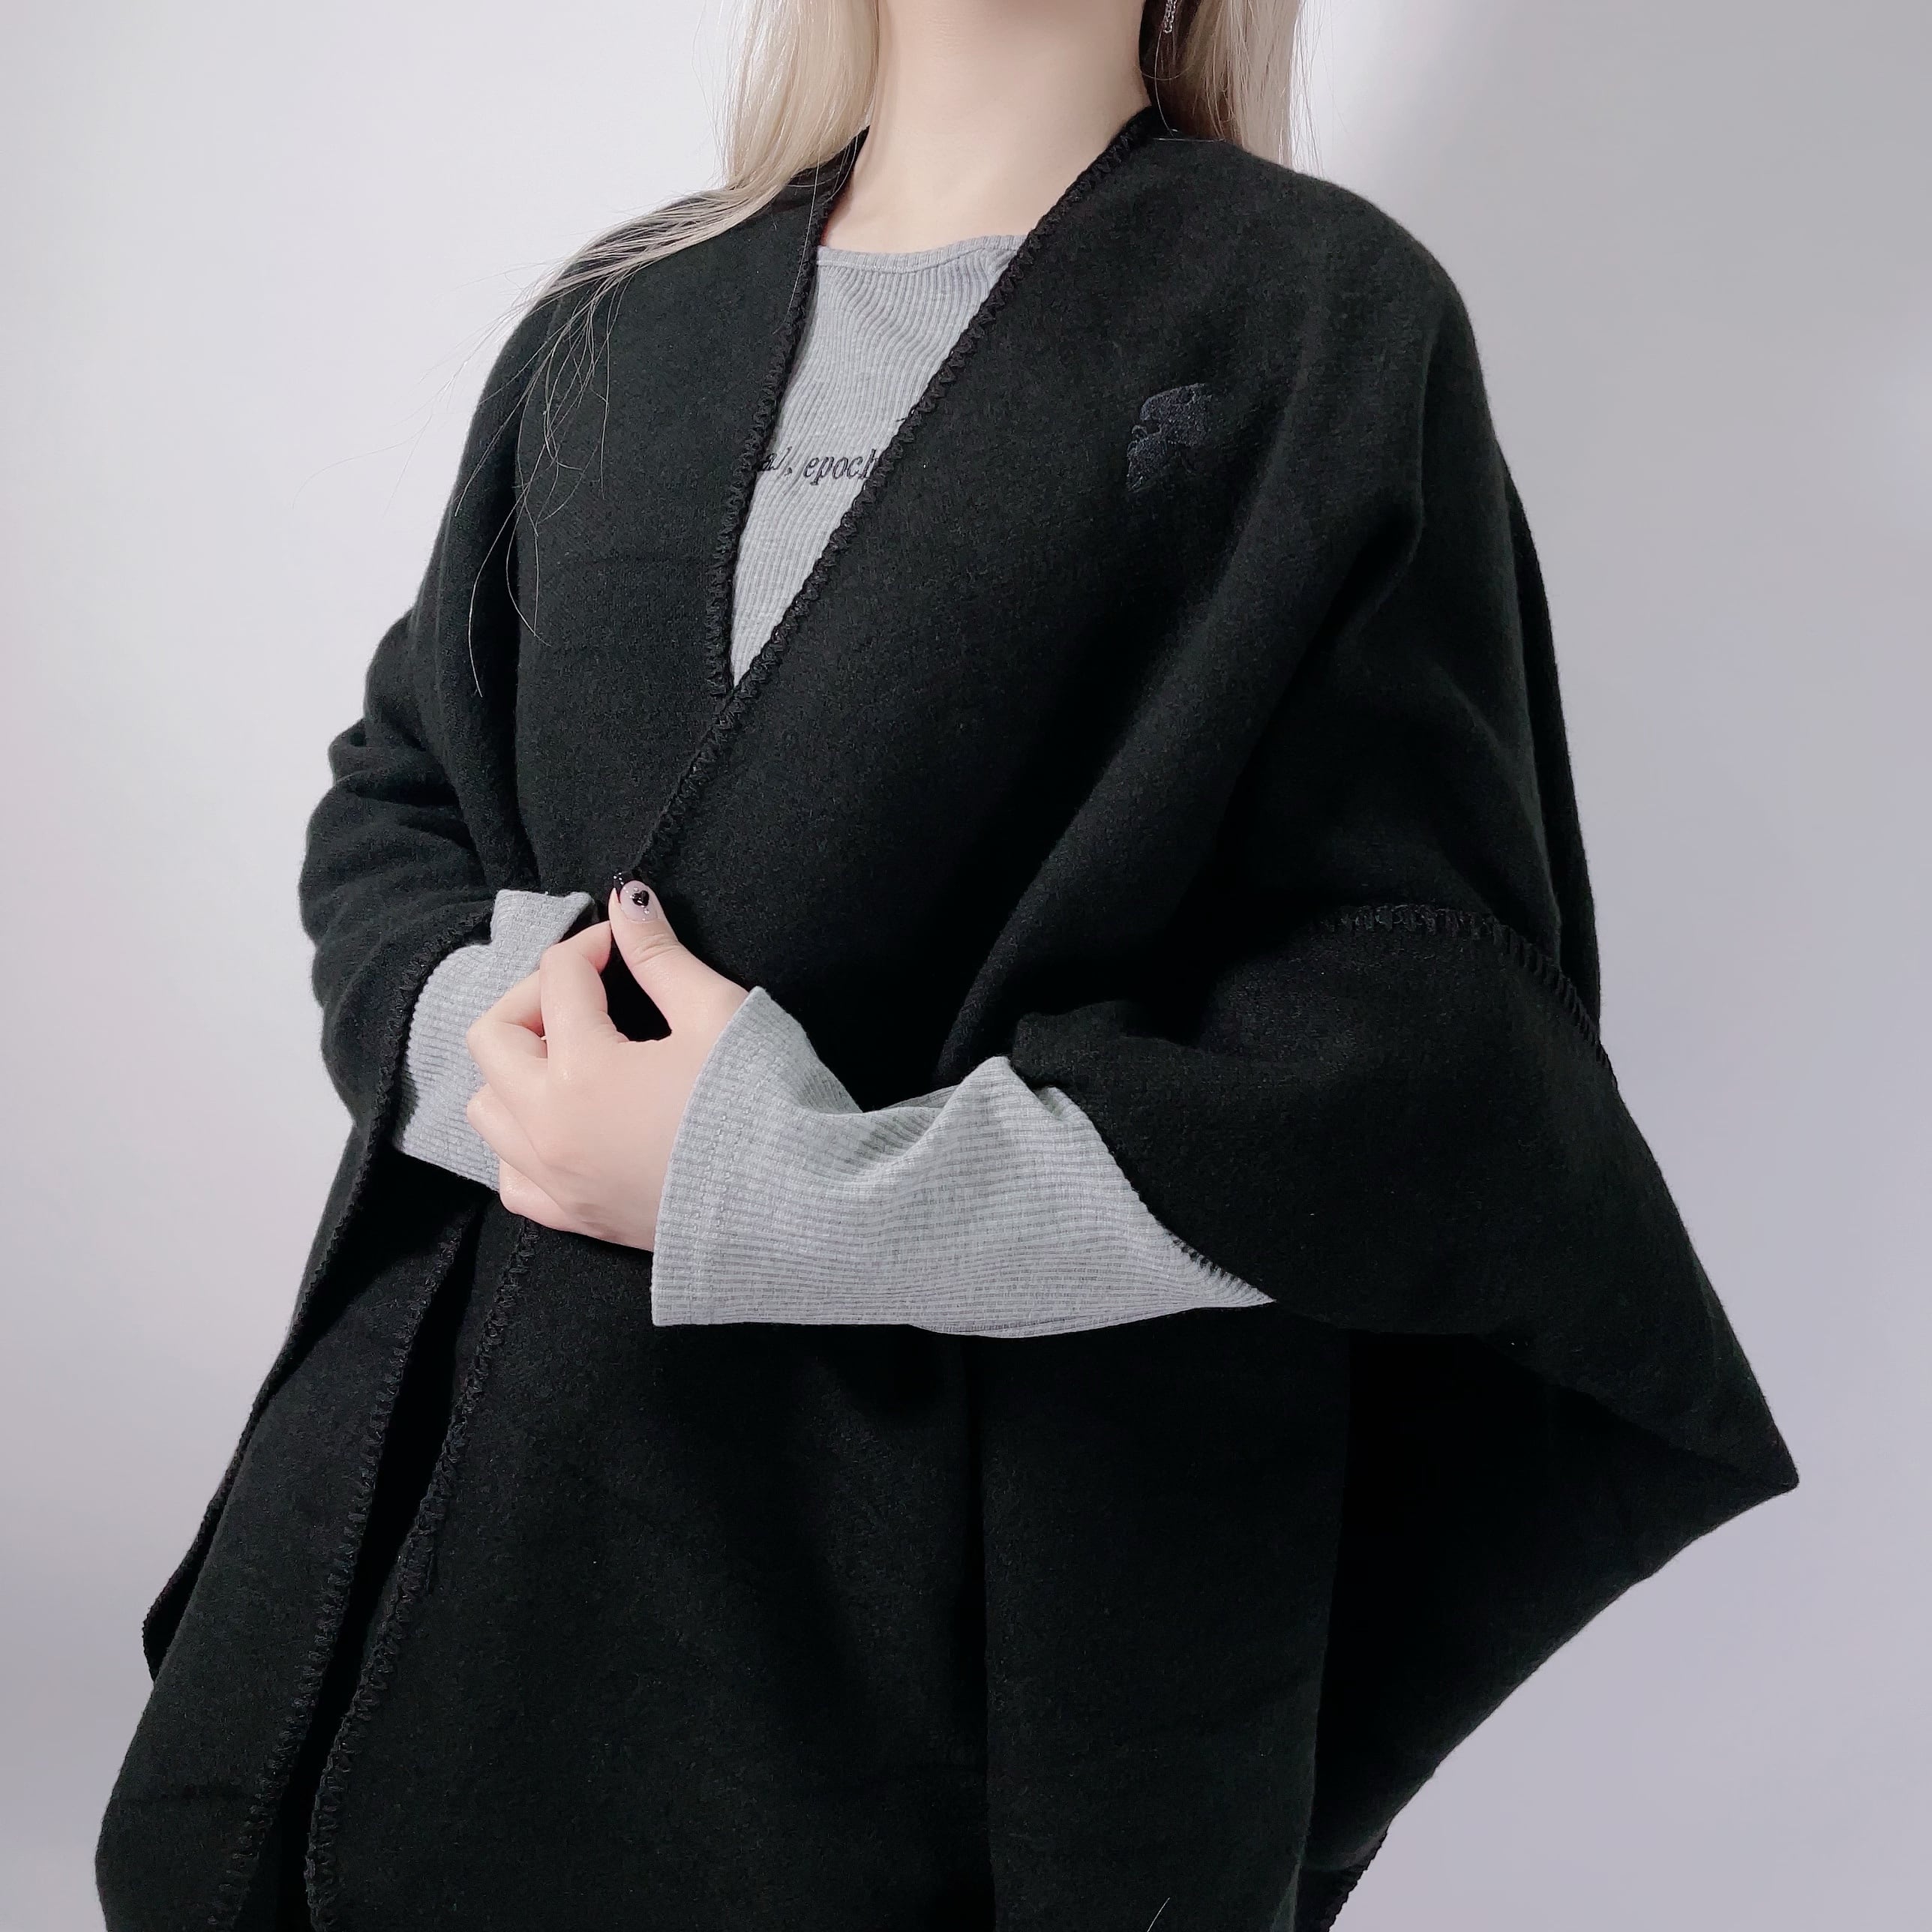 大特価777円》ポンチョストール【BLACK】 NIER CLOTHING